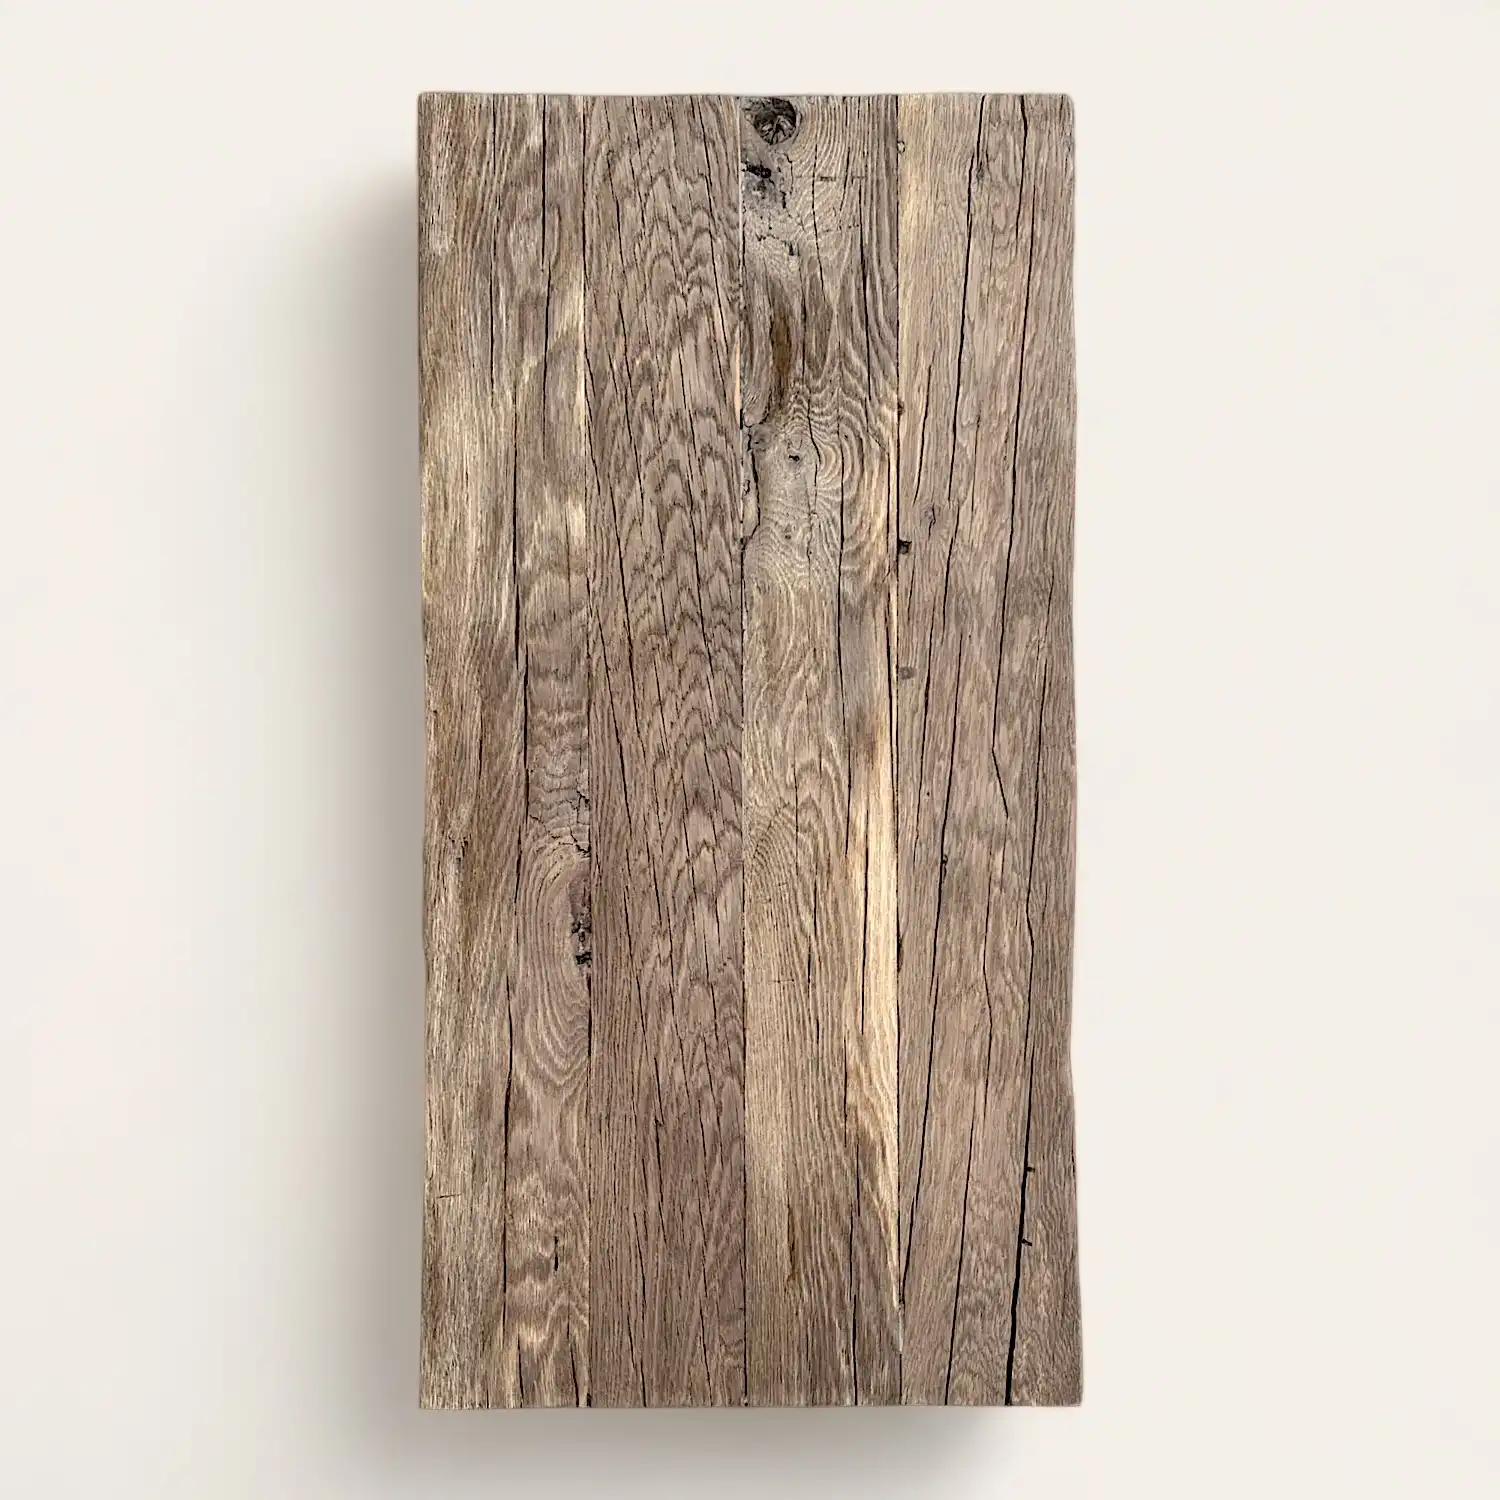  Une planche de vieux bois accrochée à un mur. 